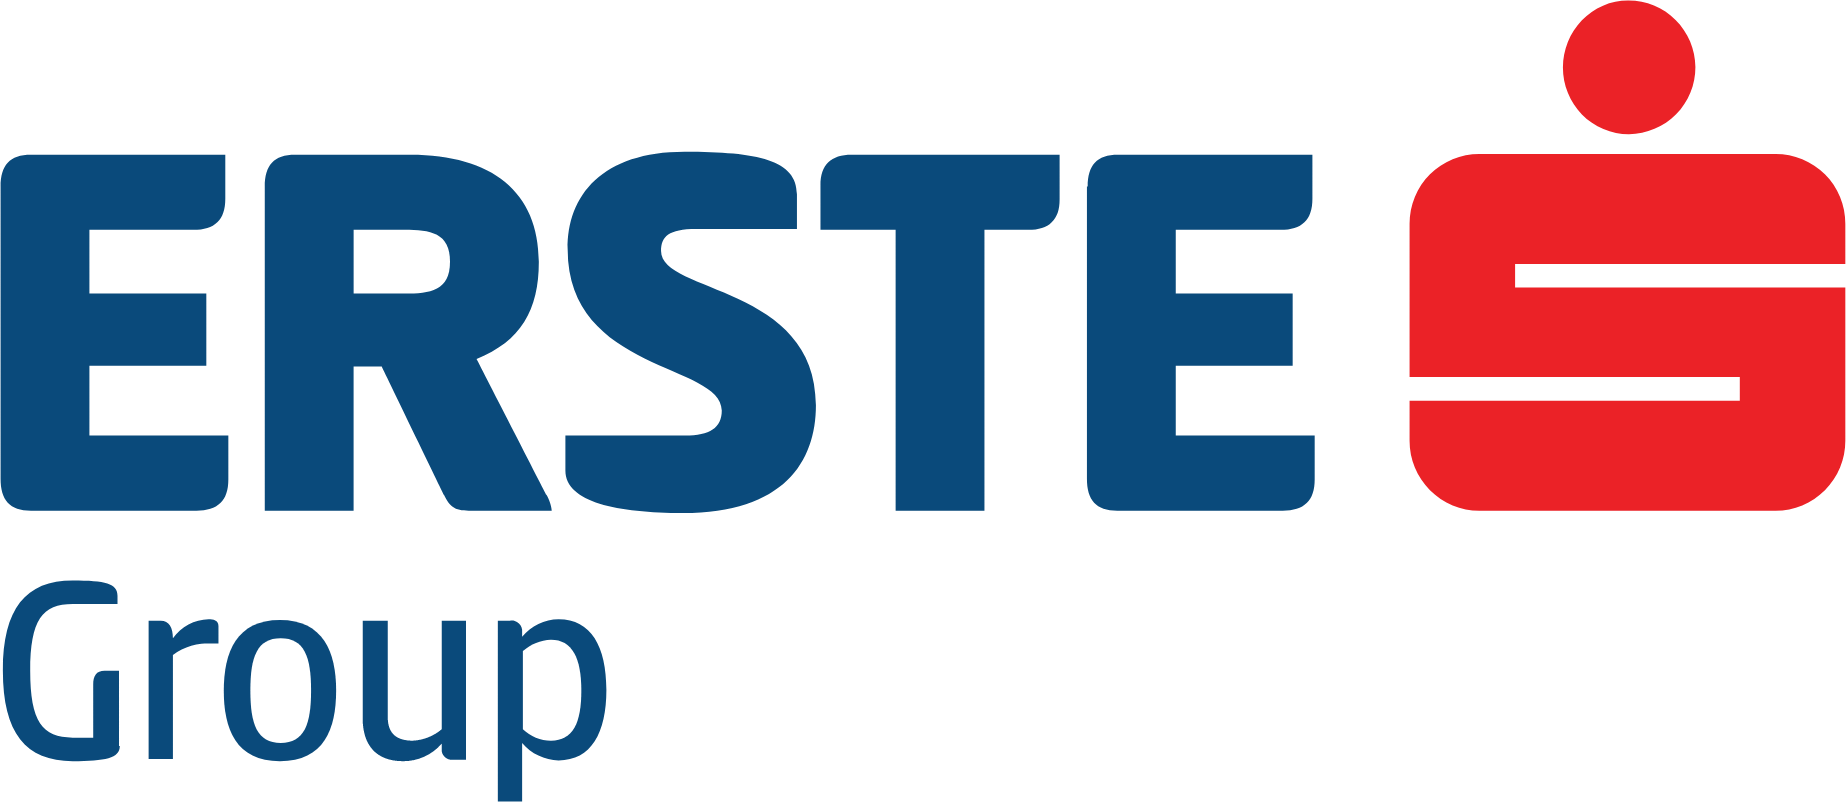 Erste Group Bank logo large (transparent PNG)